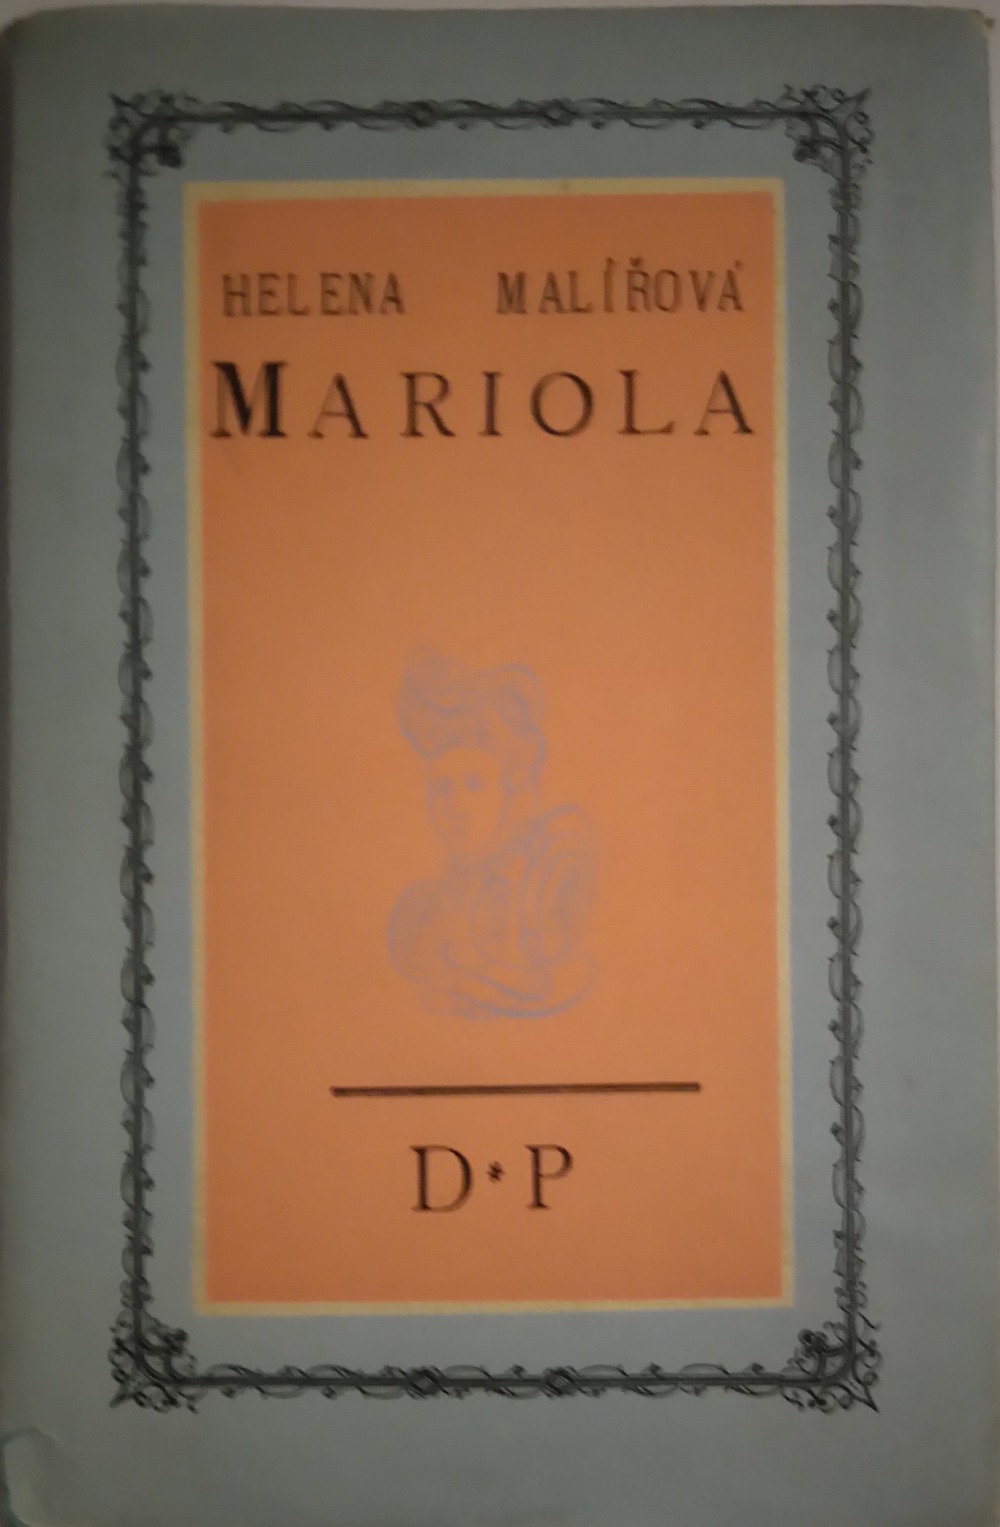 Mariola